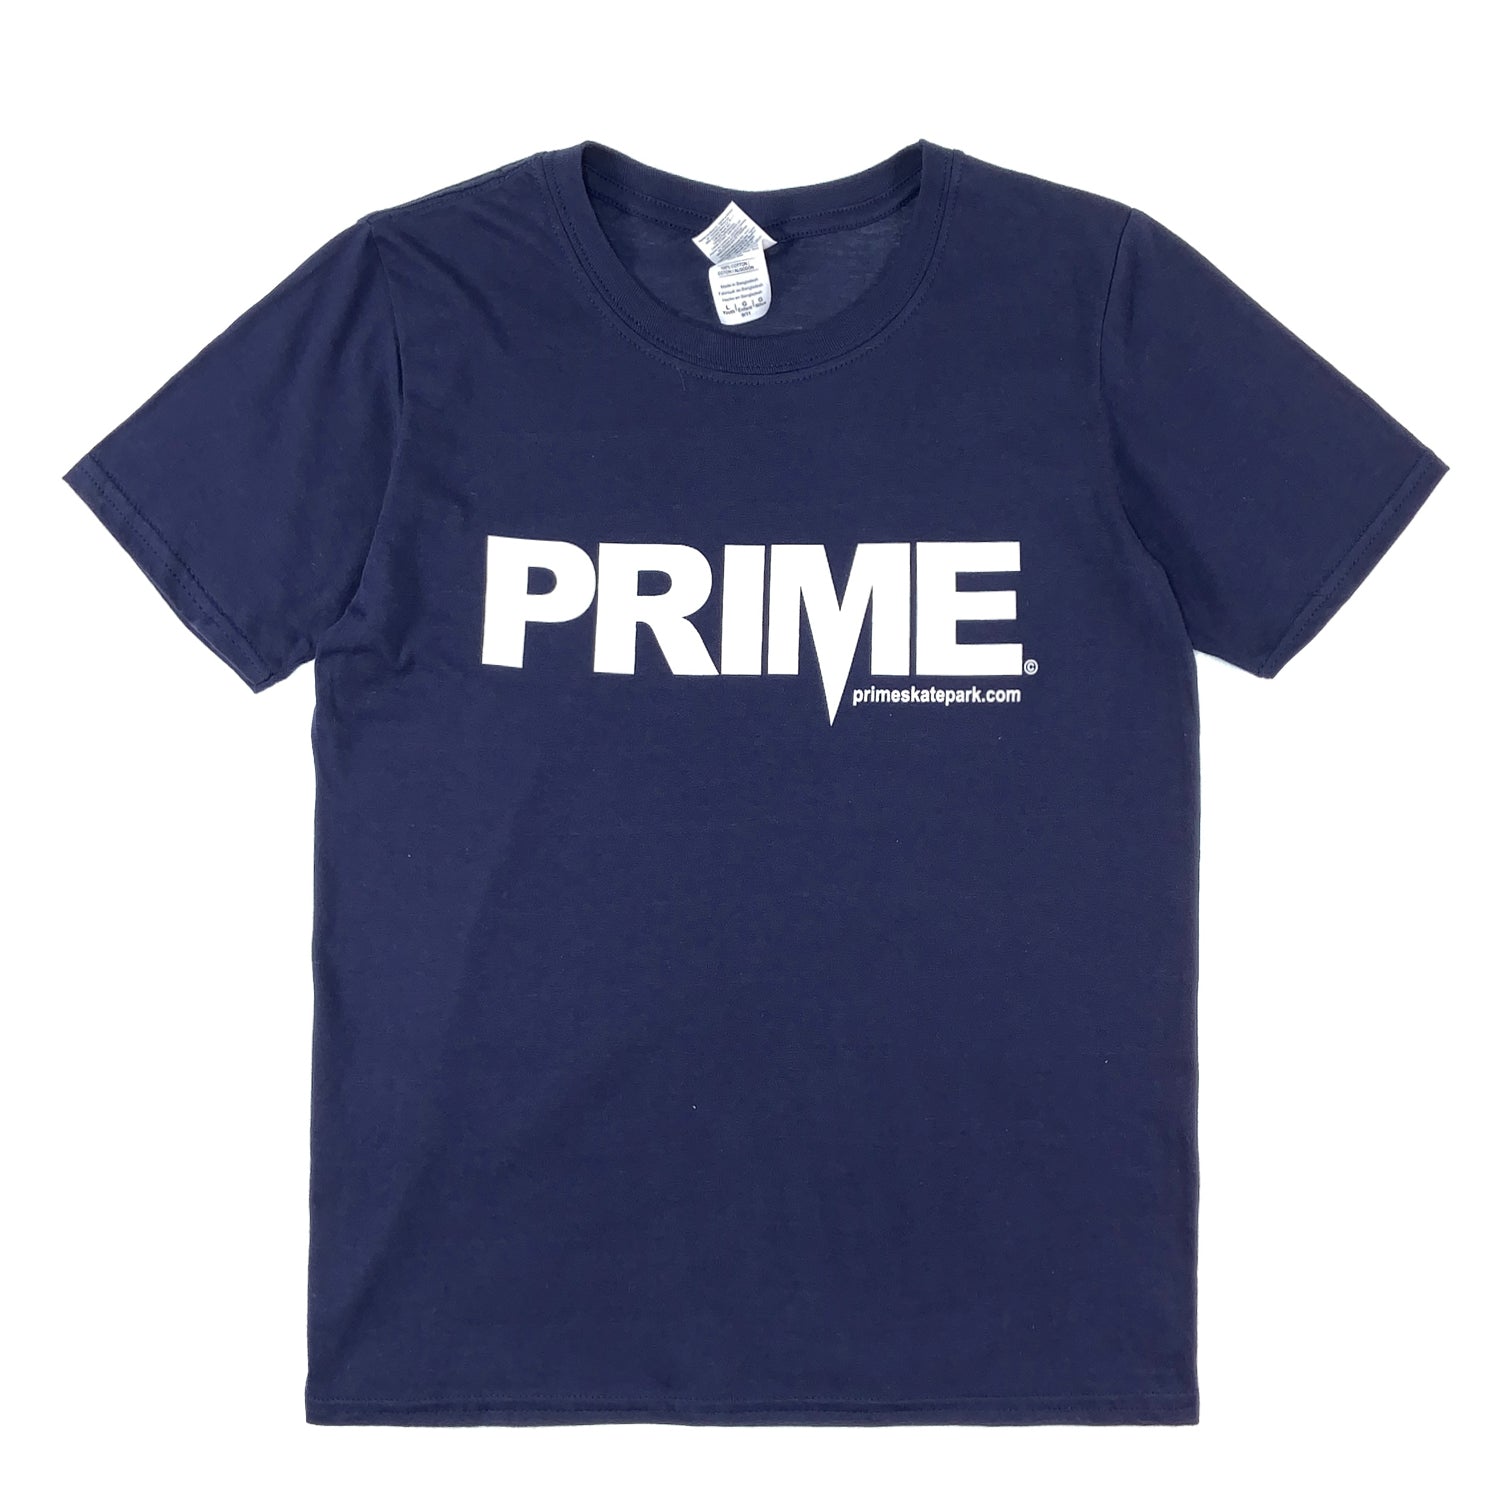 Prime Delux OG Logo Kids T Shirt - Navy / White - Prime Delux Store